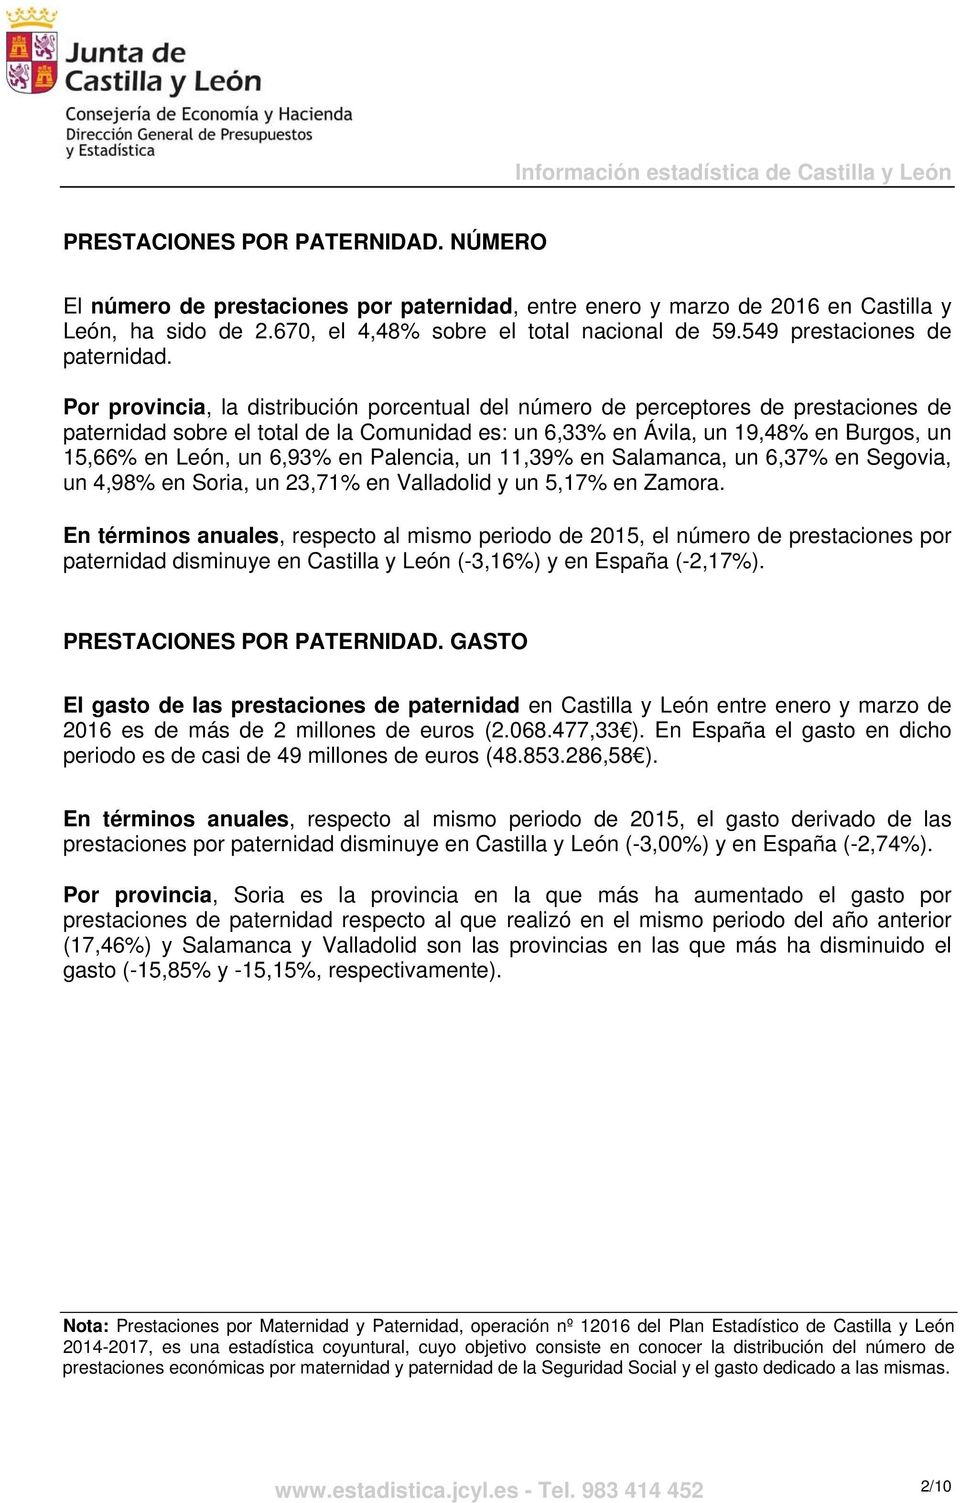 Por provincia, la distribución porcentual del número de perceptores de prestaciones de paternidad sobre el total de la Comunidad es: un 6,33% en Ávila, un 19,48% en Burgos, un 15,66% en León, un